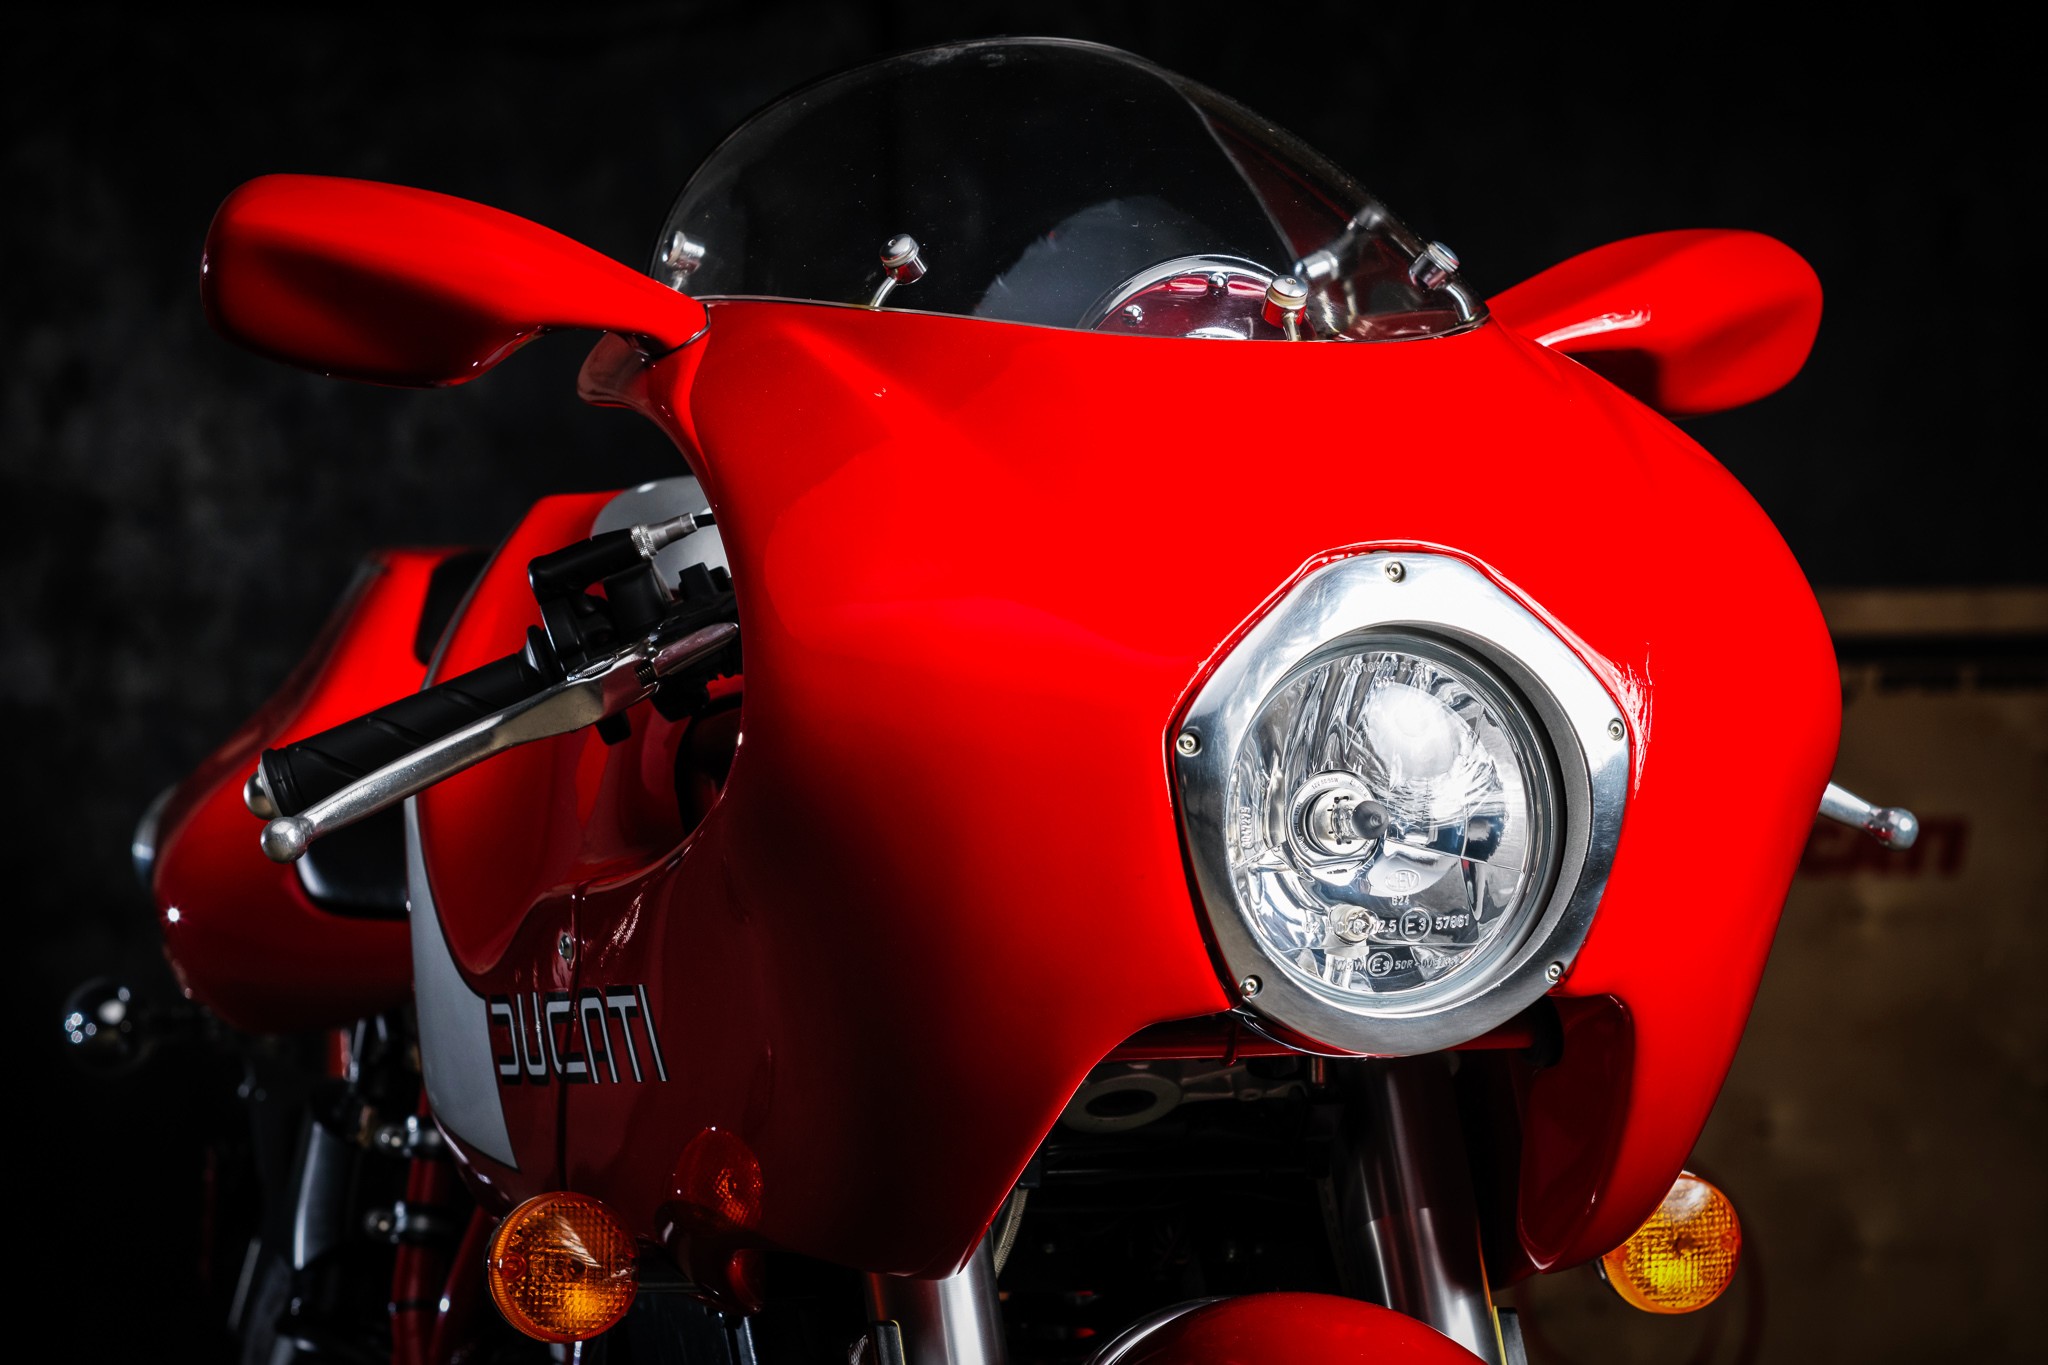 Редкий Ducati MH900e 2002 года с заводской упаковкой